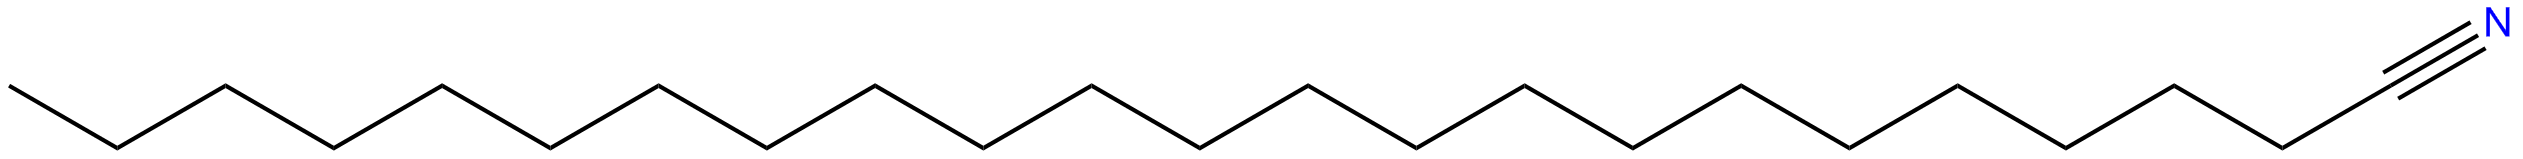 Image of tricosanenitrile